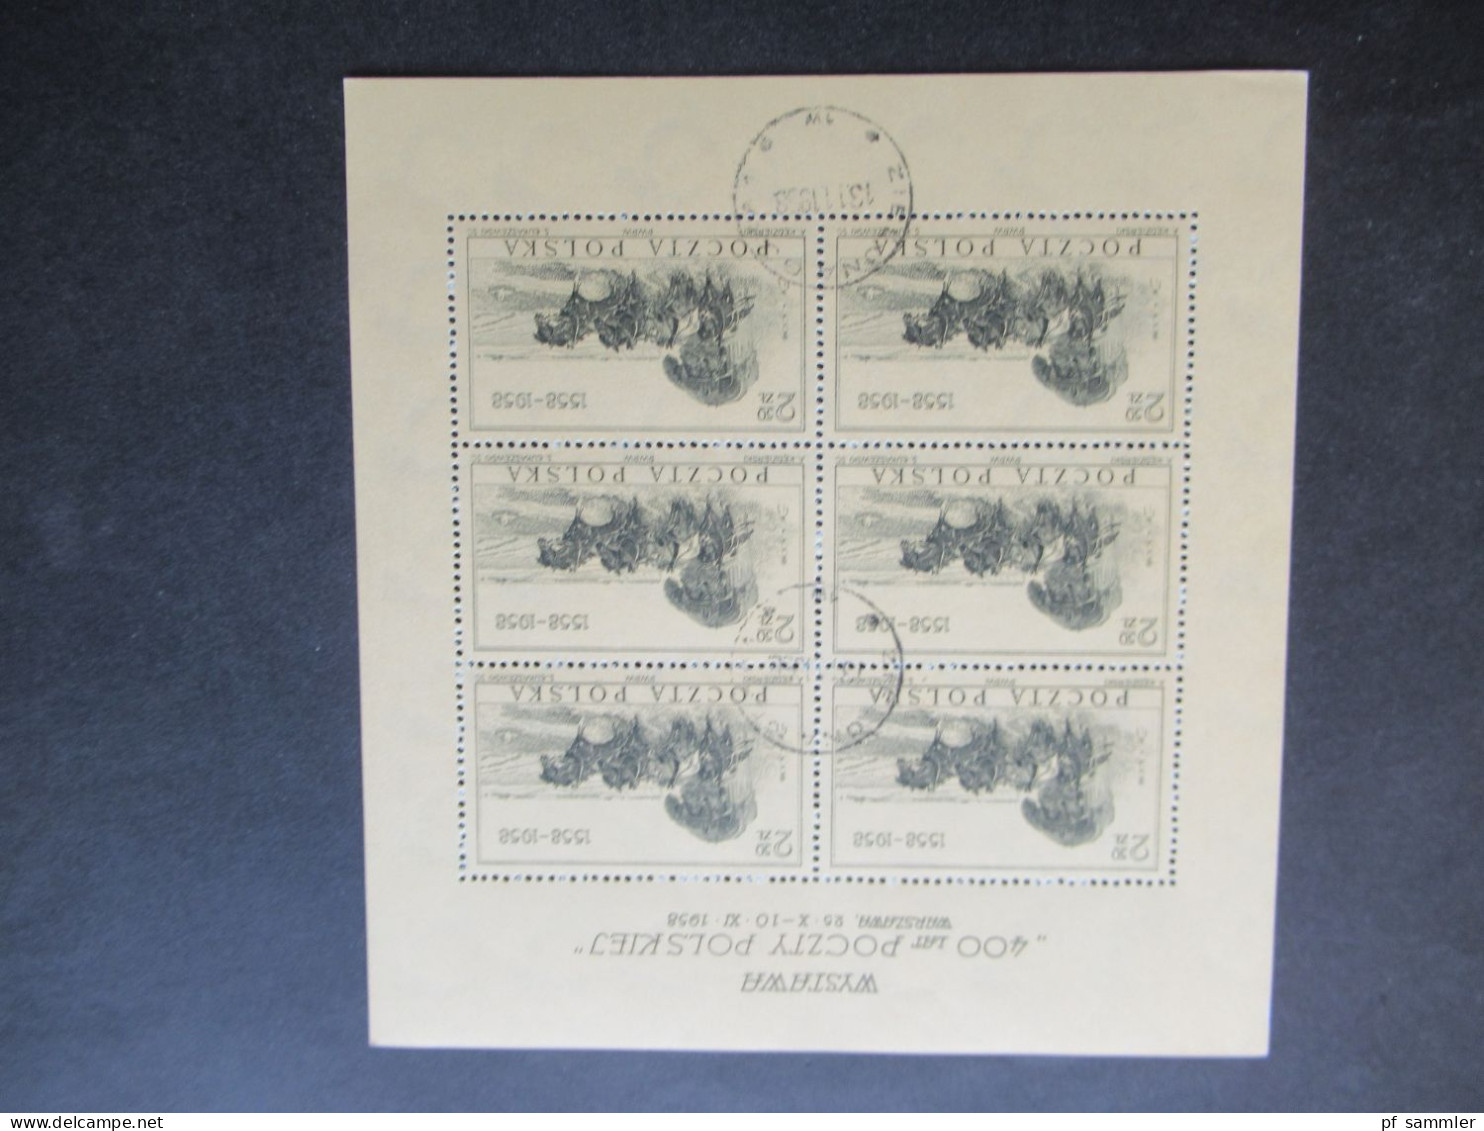 Polen 1960 1x Nr.1177 Briefmarkenausstellung Polska Kleinbogen gest. Opole und 12x Kleinbogen I Nr.1072 aus 1958 gestemp